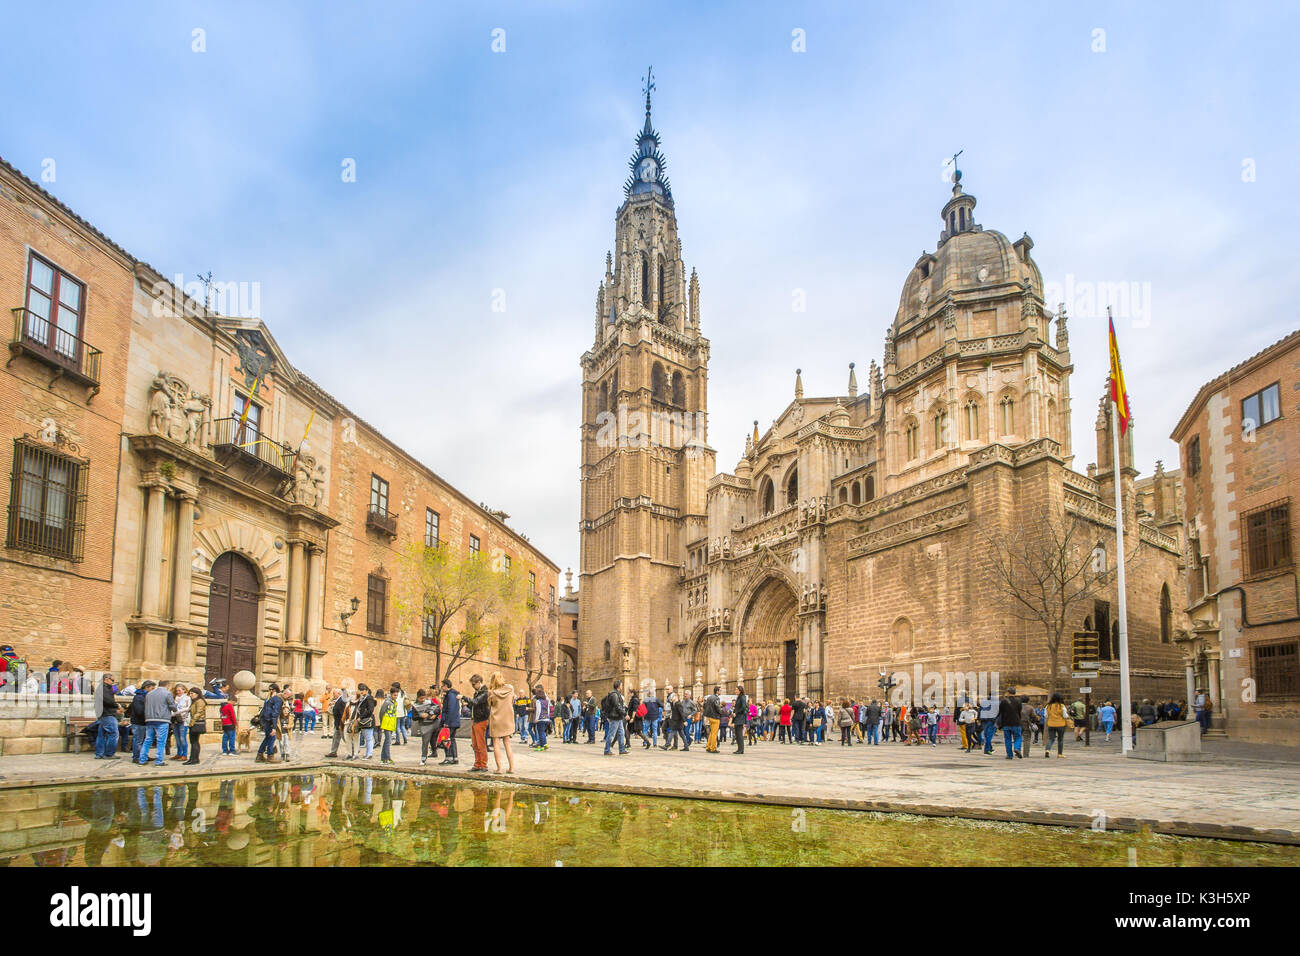 Espagne, Toledo, ville du patrimoine mondial de l'UNESCO, la cathédrale de Tolède Banque D'Images